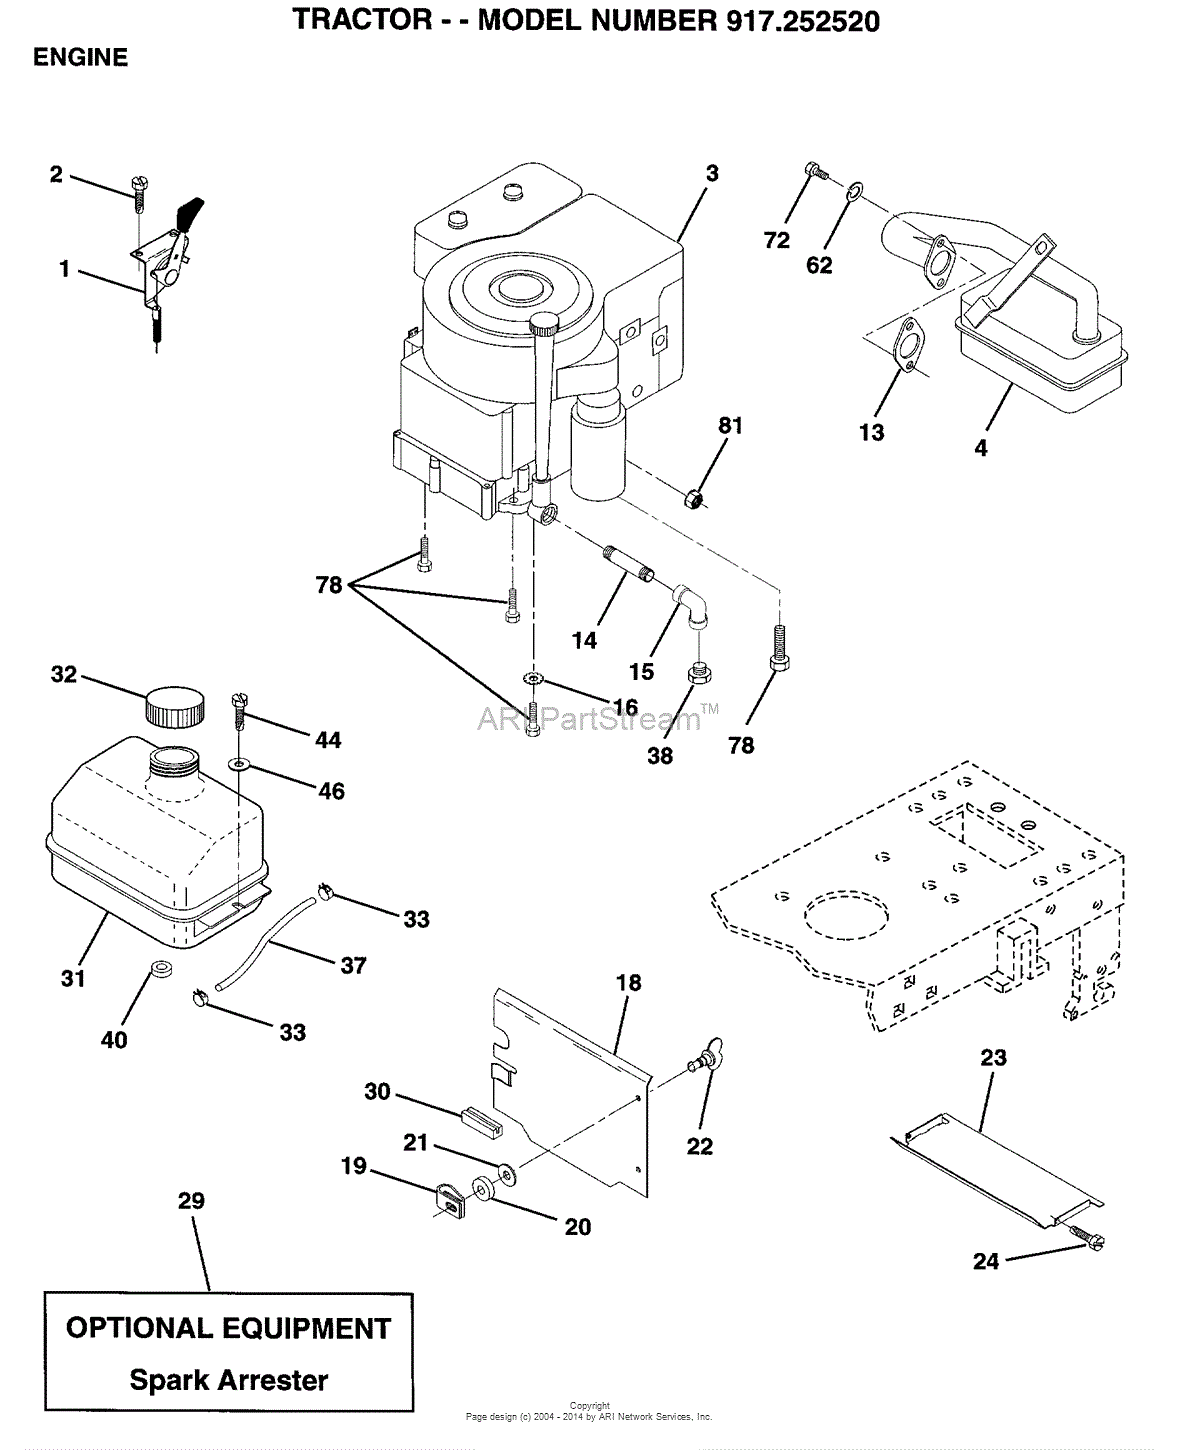 Ayp  Electrolux 917 252520  1999  U0026 Before  Parts Diagram